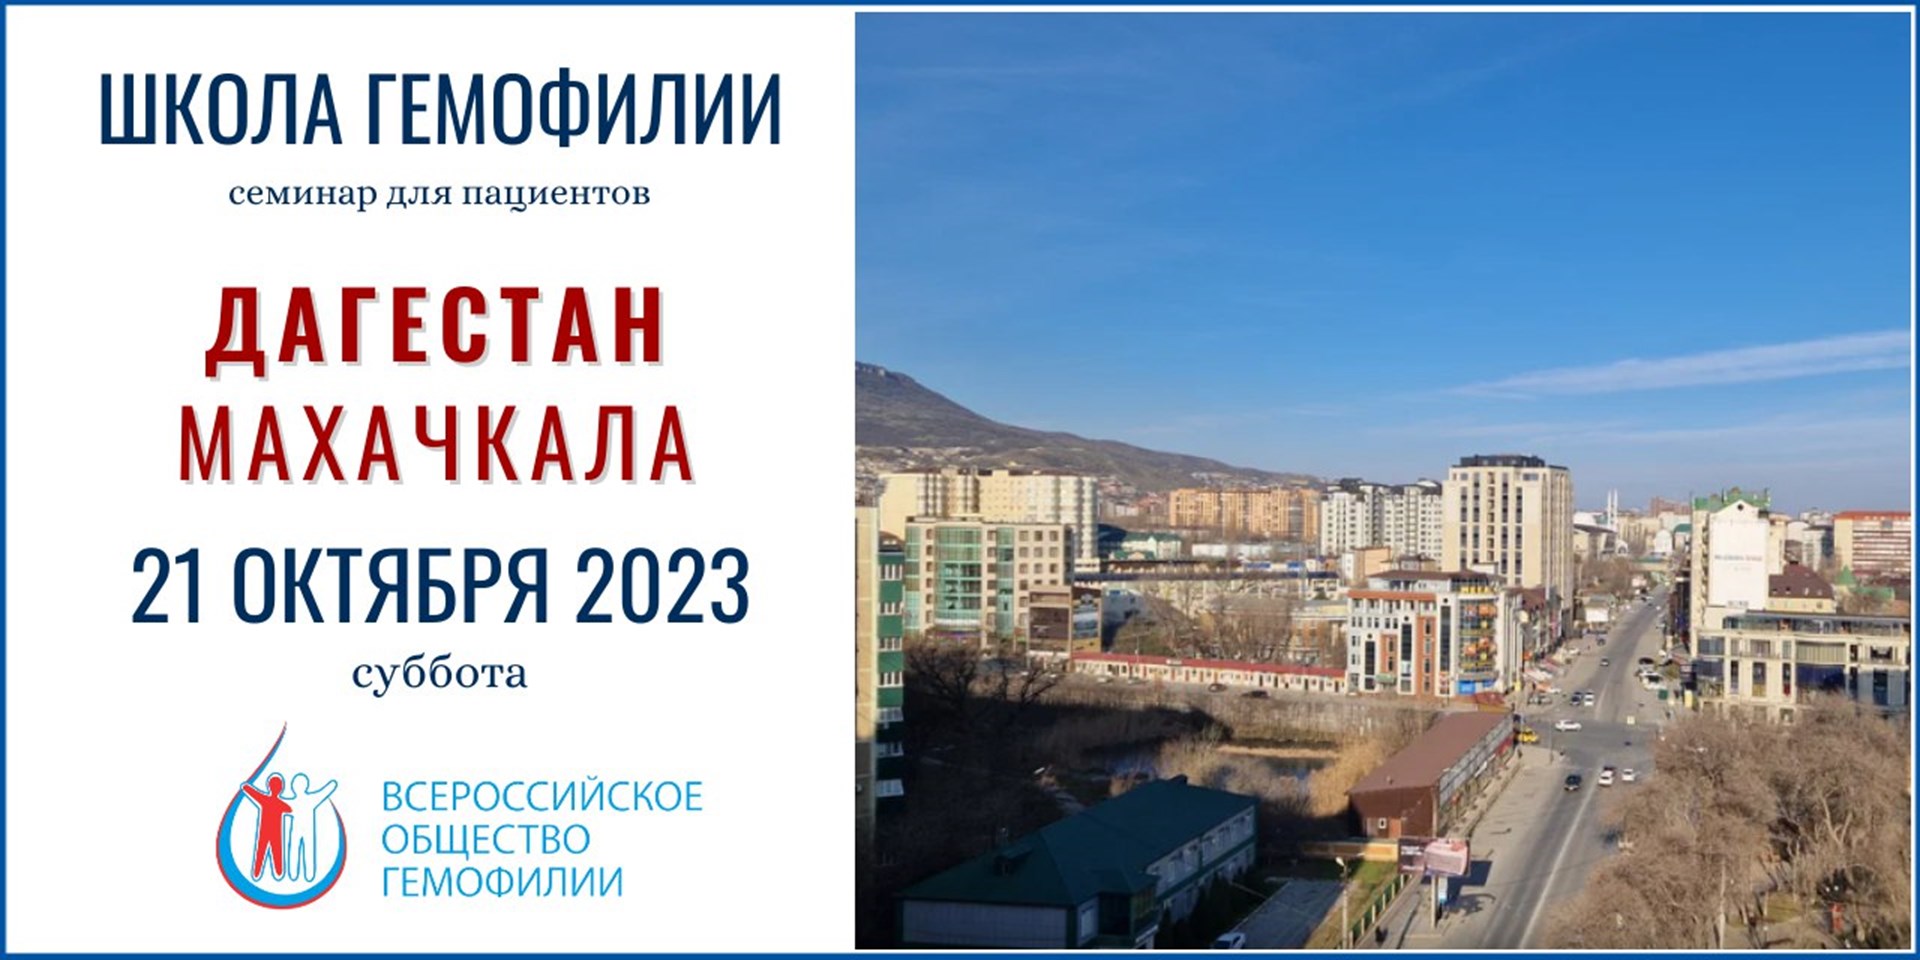 Анонс! Школа гемофилии Республика Дагестан 21 октября 2023